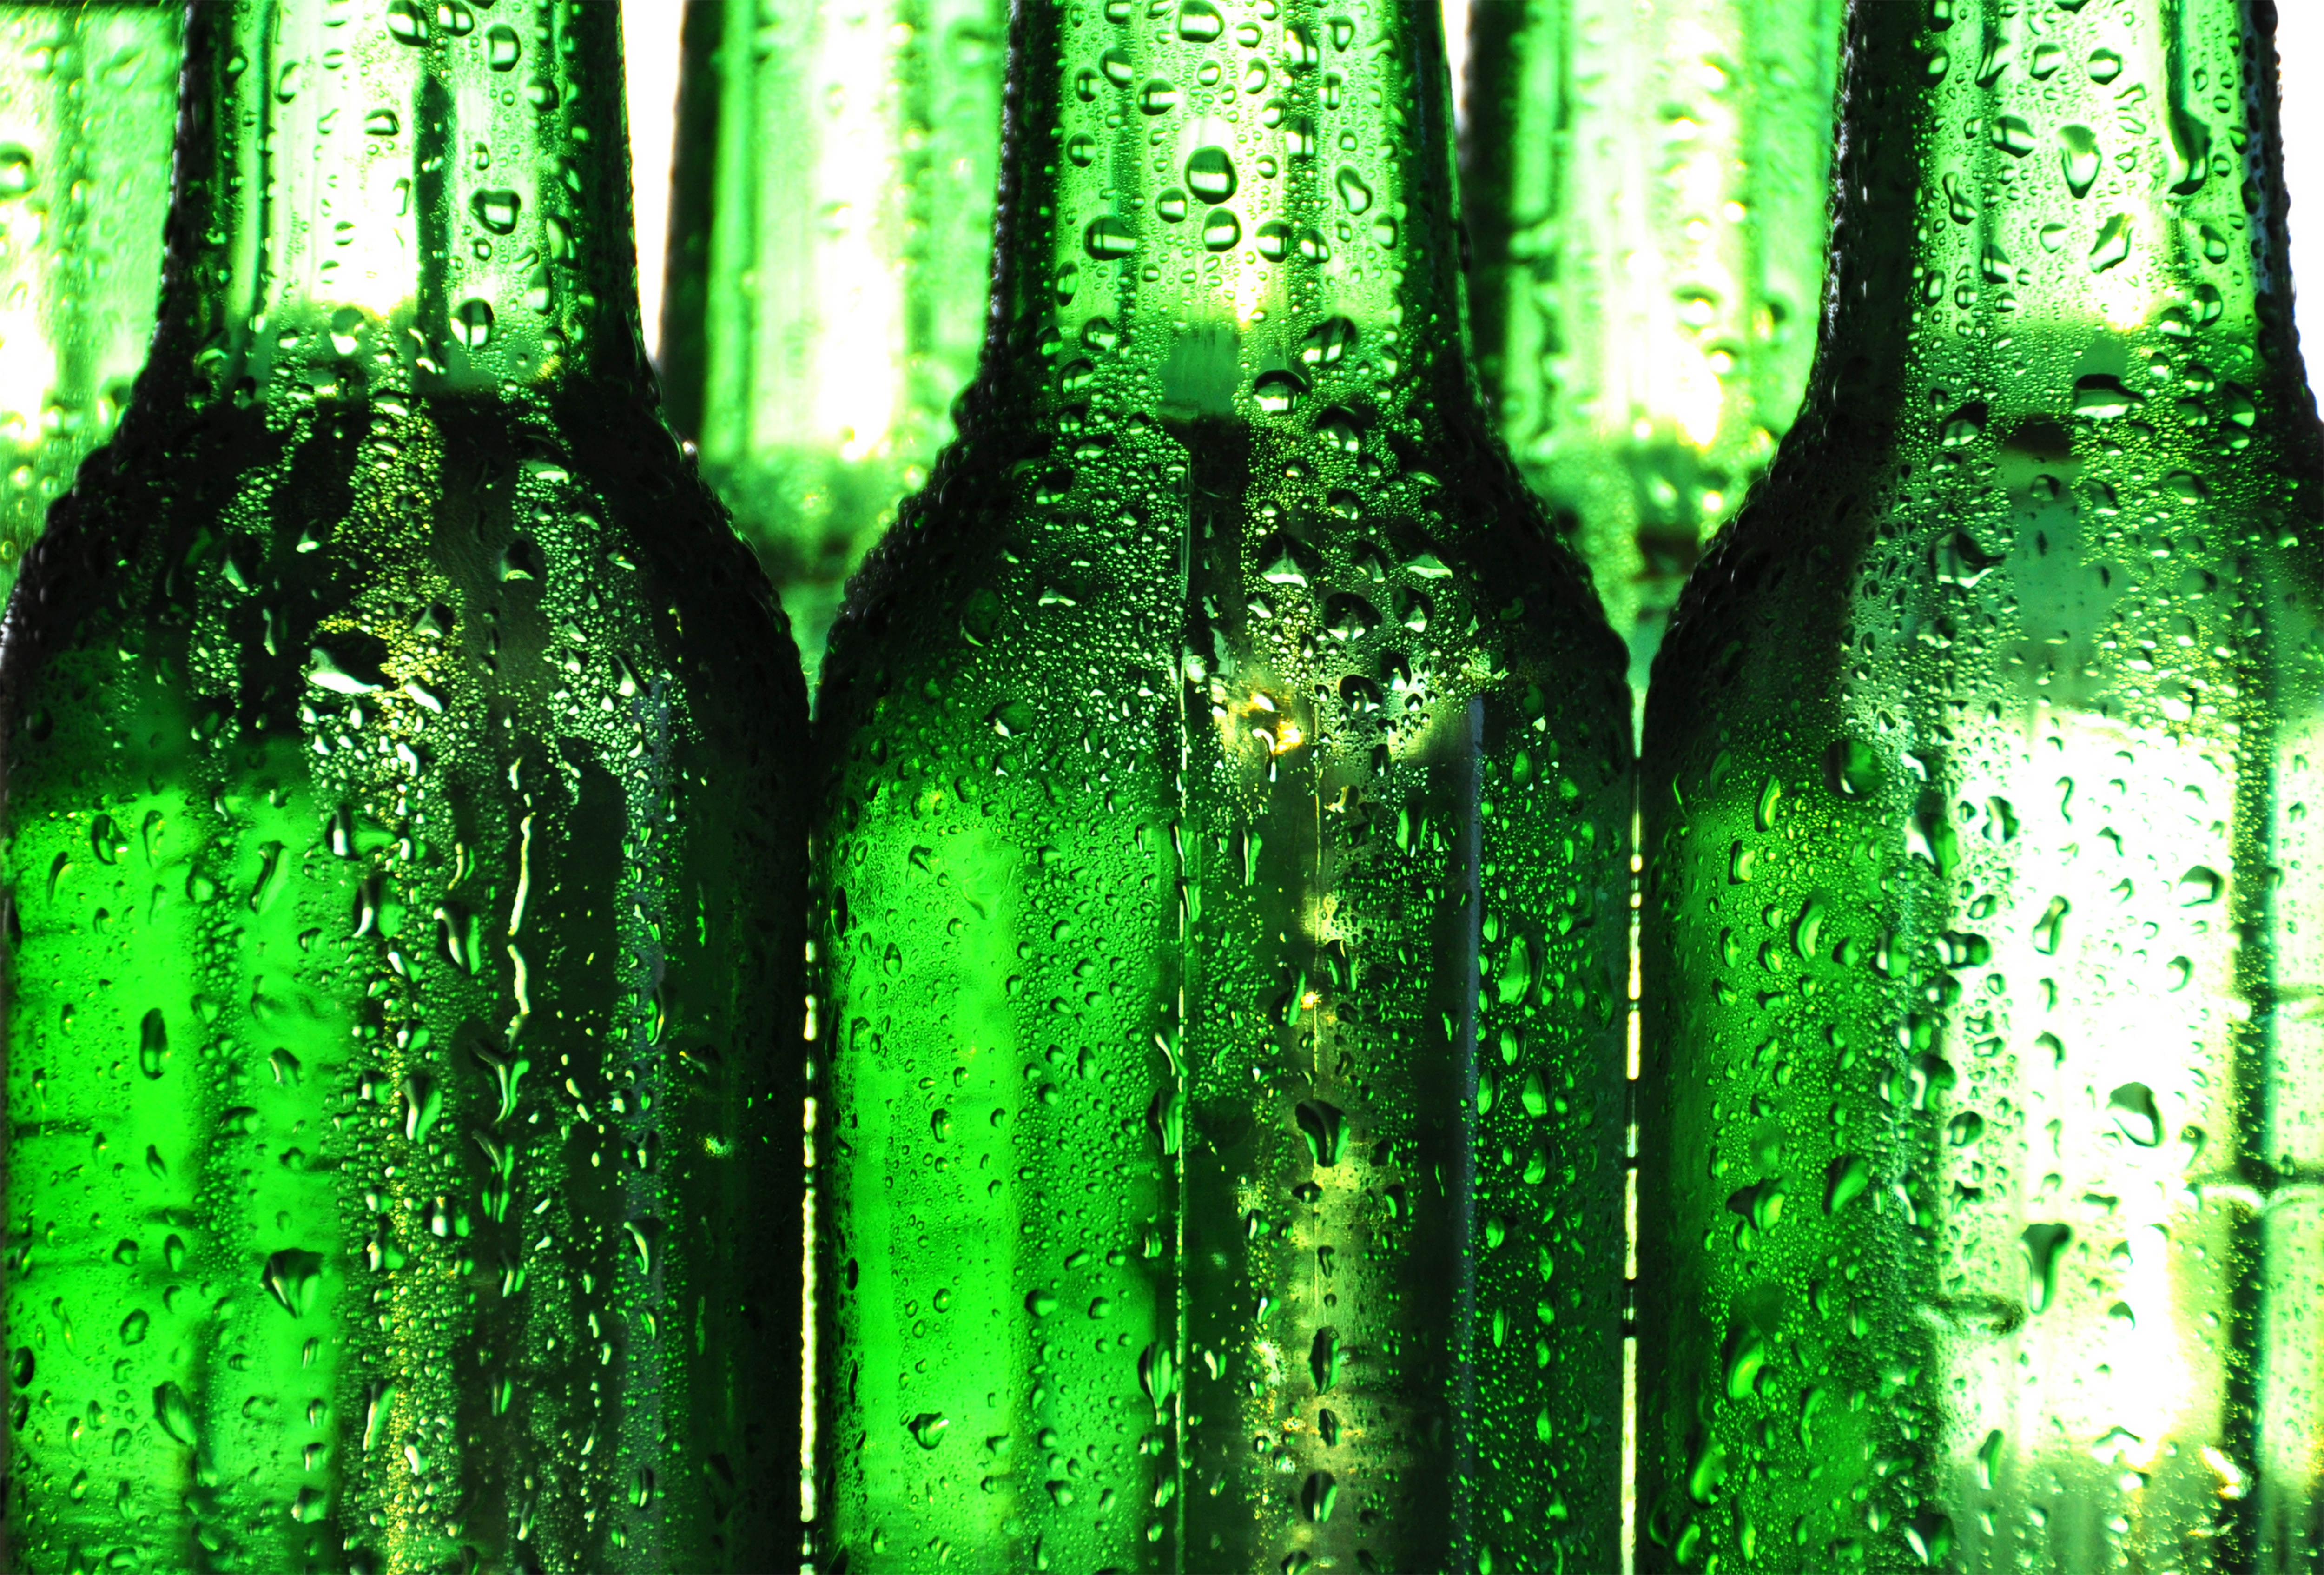 bottle wallpaper,bottle,glass bottle,green,beer bottle,drink